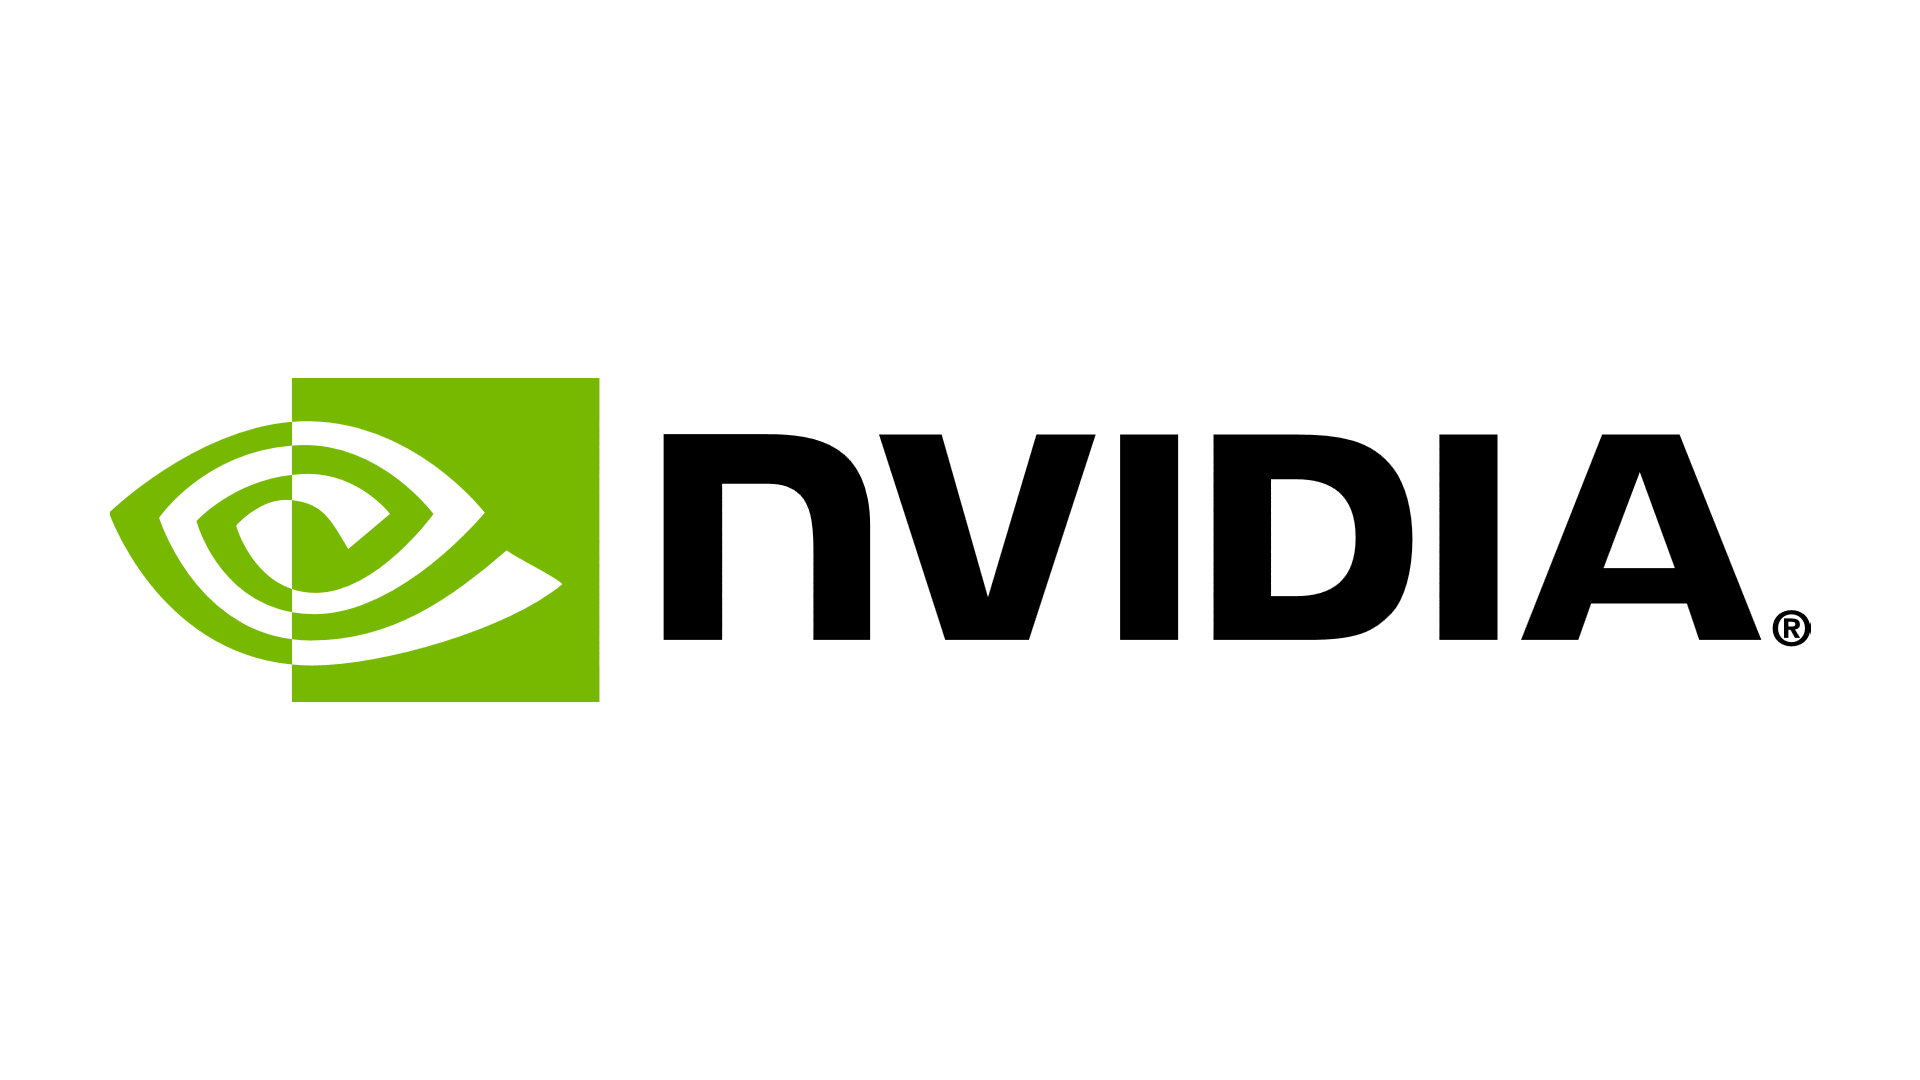 NVIDIA Corporation Logo - NVIDIA Corporation. $NVDA Stock. Shares Shoot Up On Record Revenue